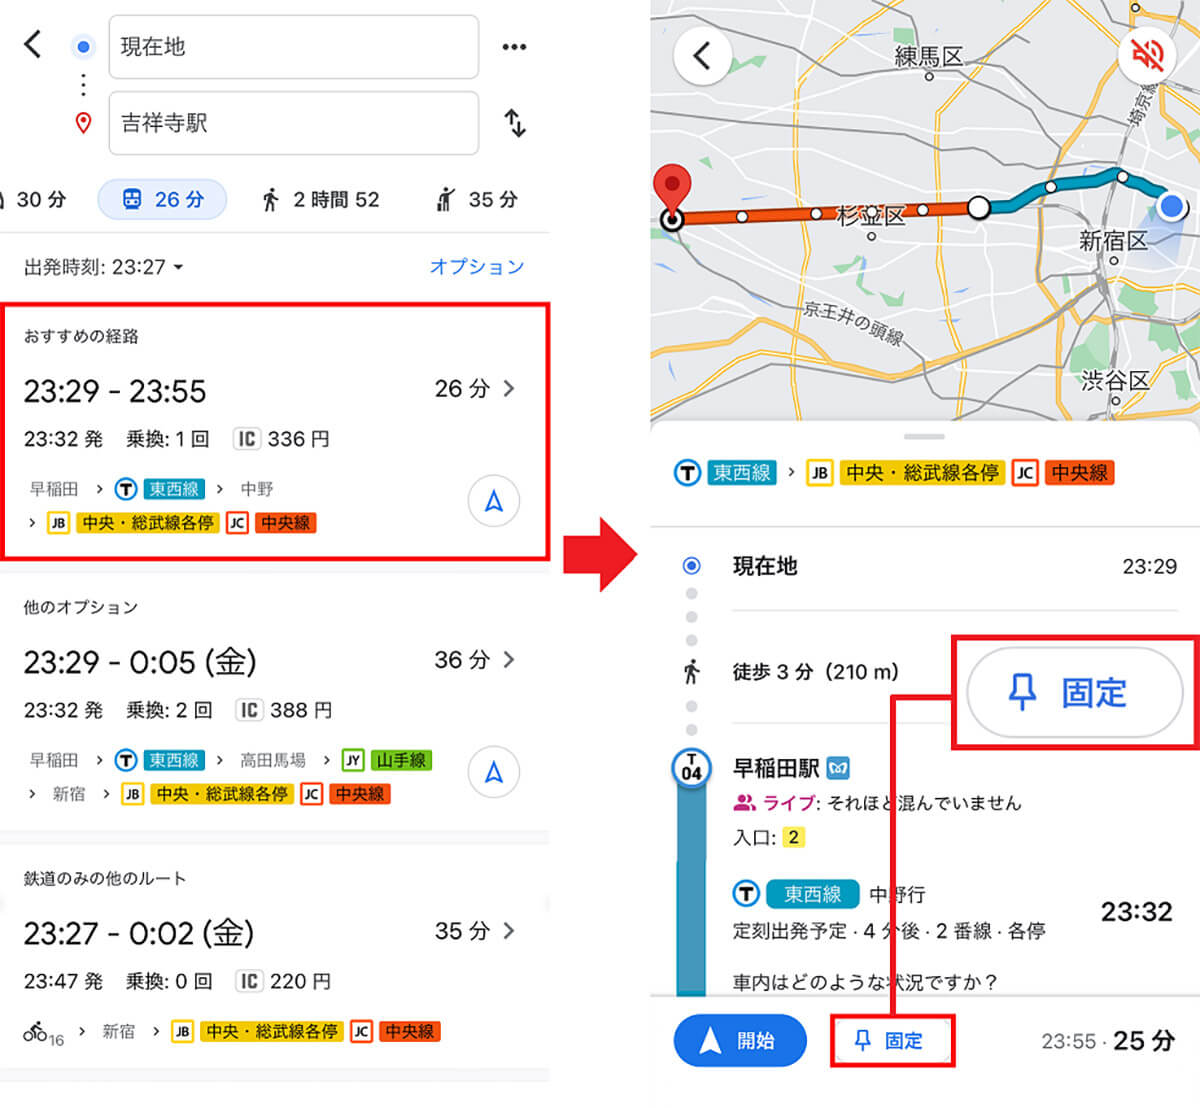 「Googleマップ」でルート情報ウィジェットに乗り換え経路を登録する方法2